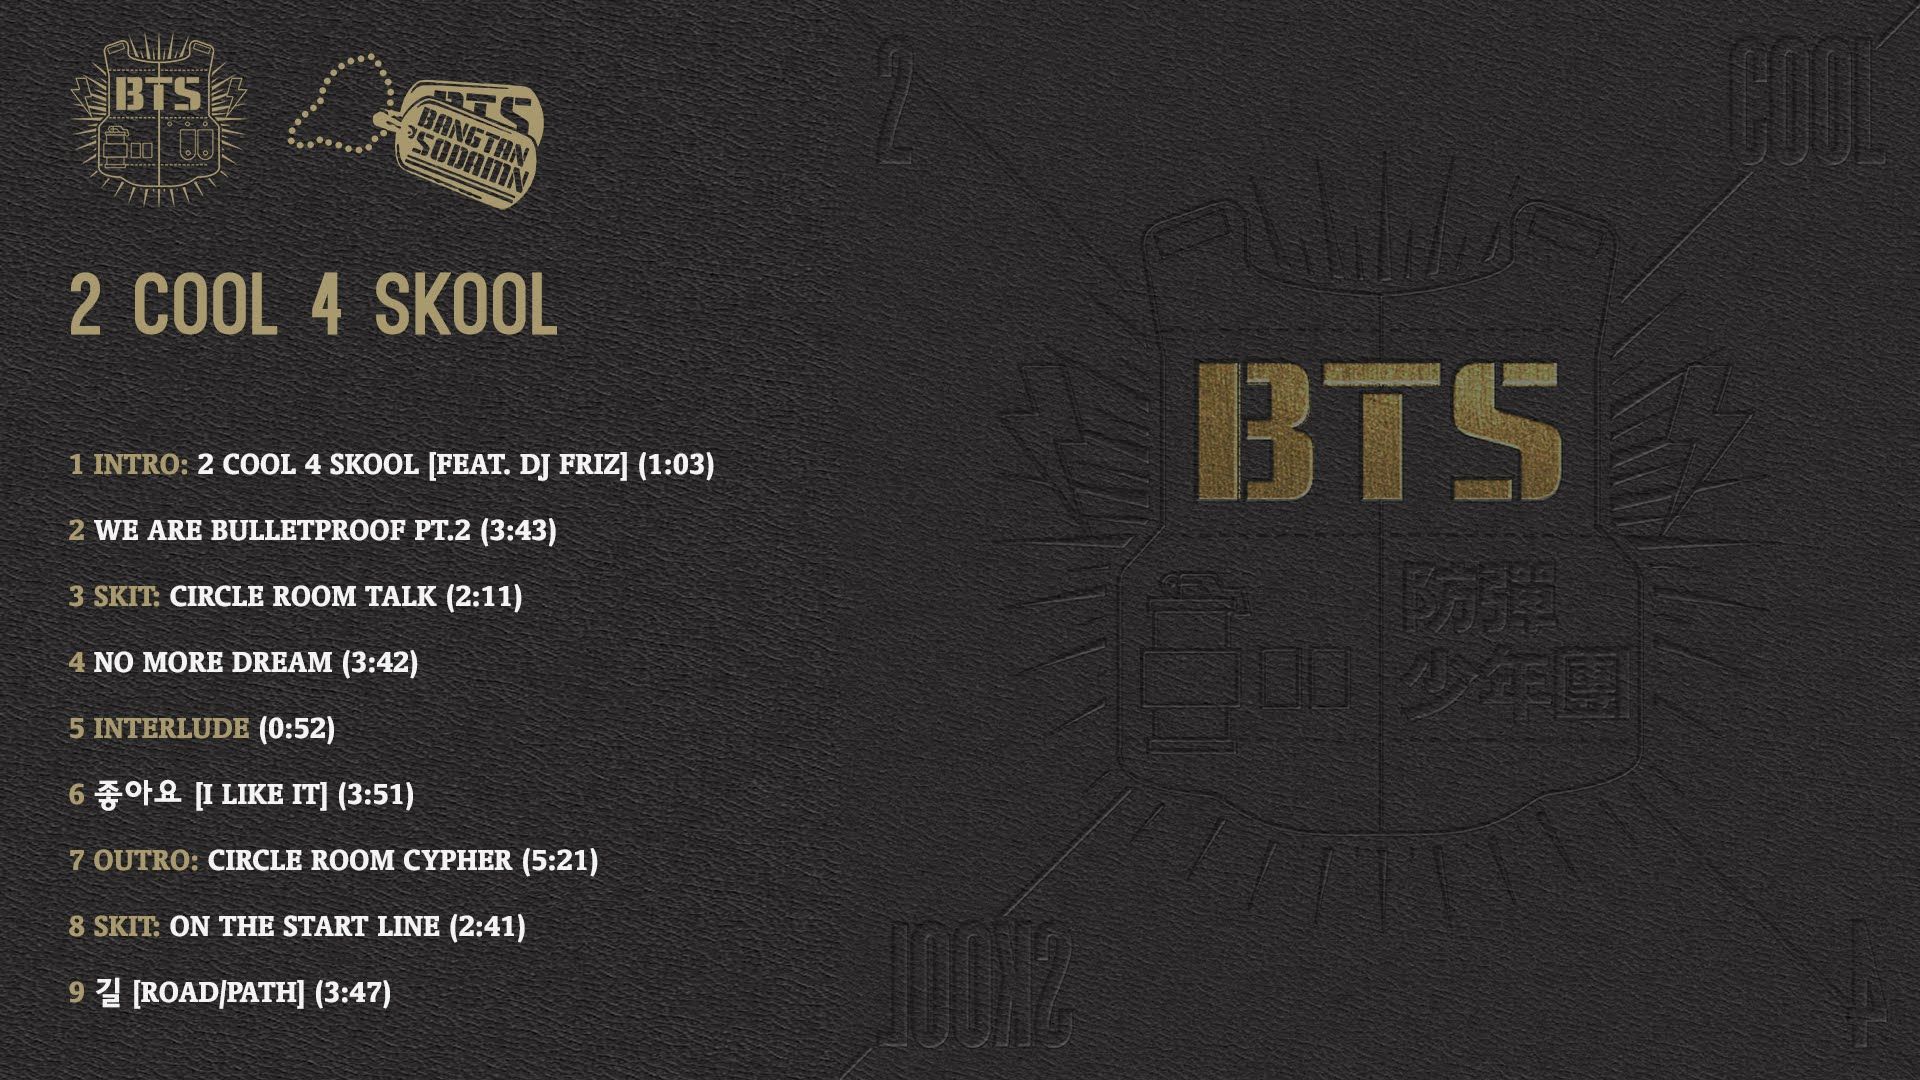 Альбом бтс 2023. BTS 2 cool 4 Skool альбом. BTS 2 cool 4 Skool альбом обложка. Дебютный альбом БТС 2 cool 4 School. BTS 2 cool 4 School обложка.